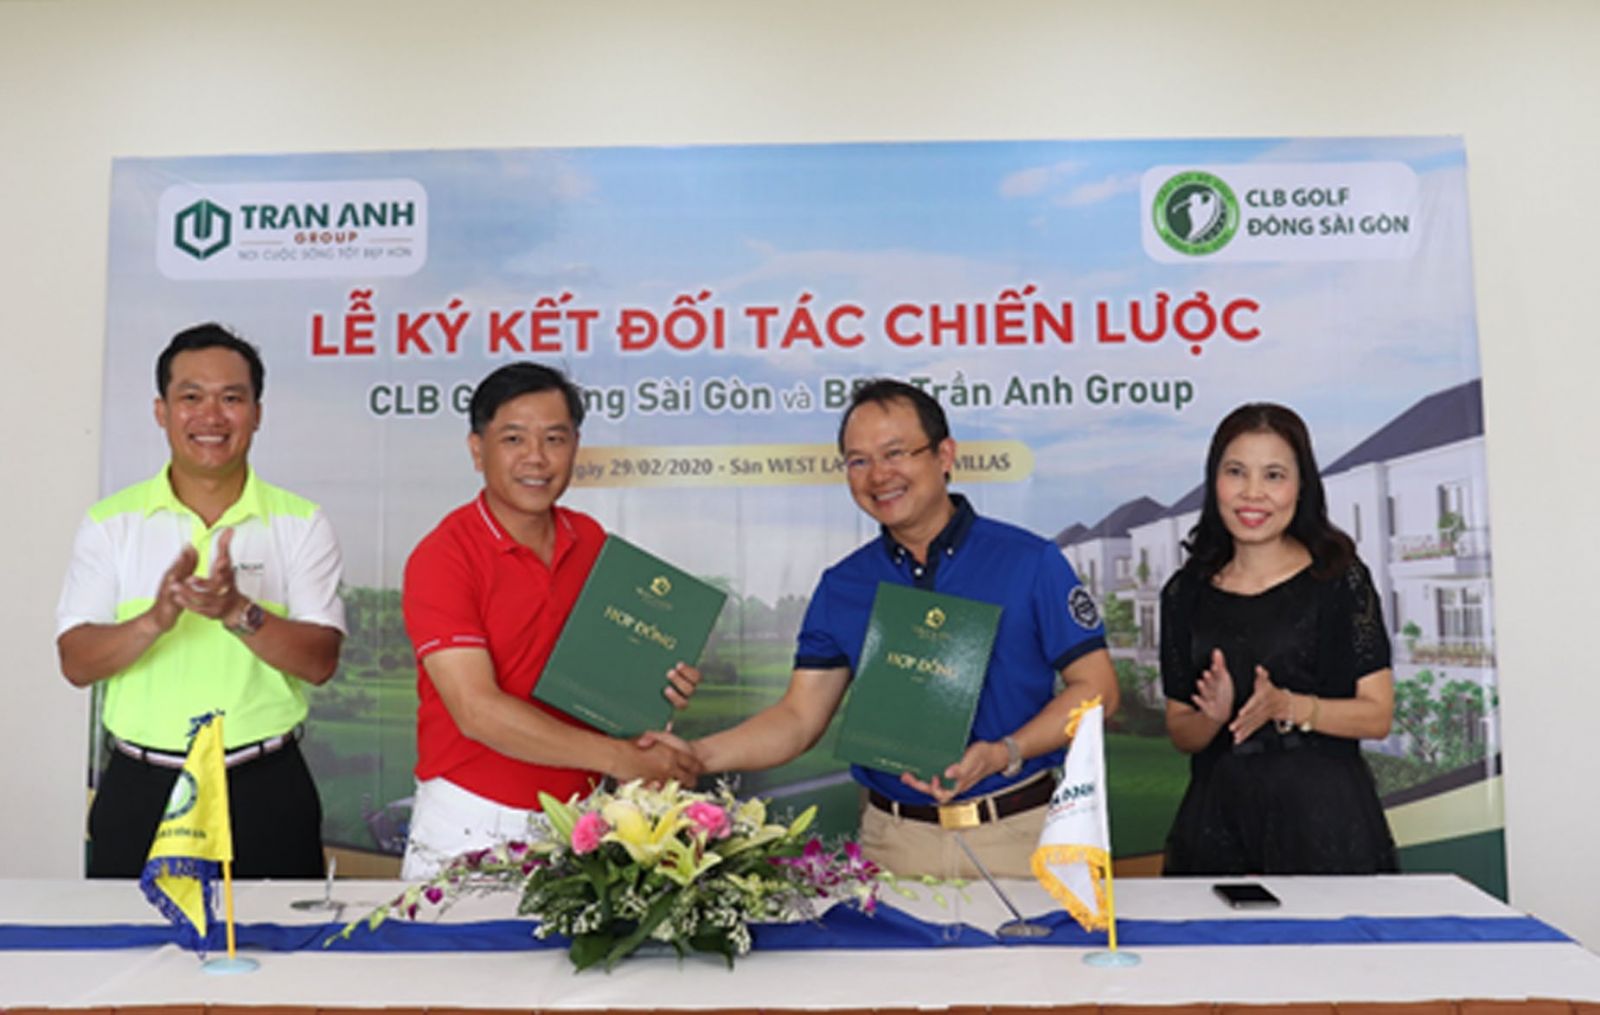 Đại diện Câu lạc bộ golf Đông Sài Gòn và Tran Anh Group ký kết hợp tác chiến lược